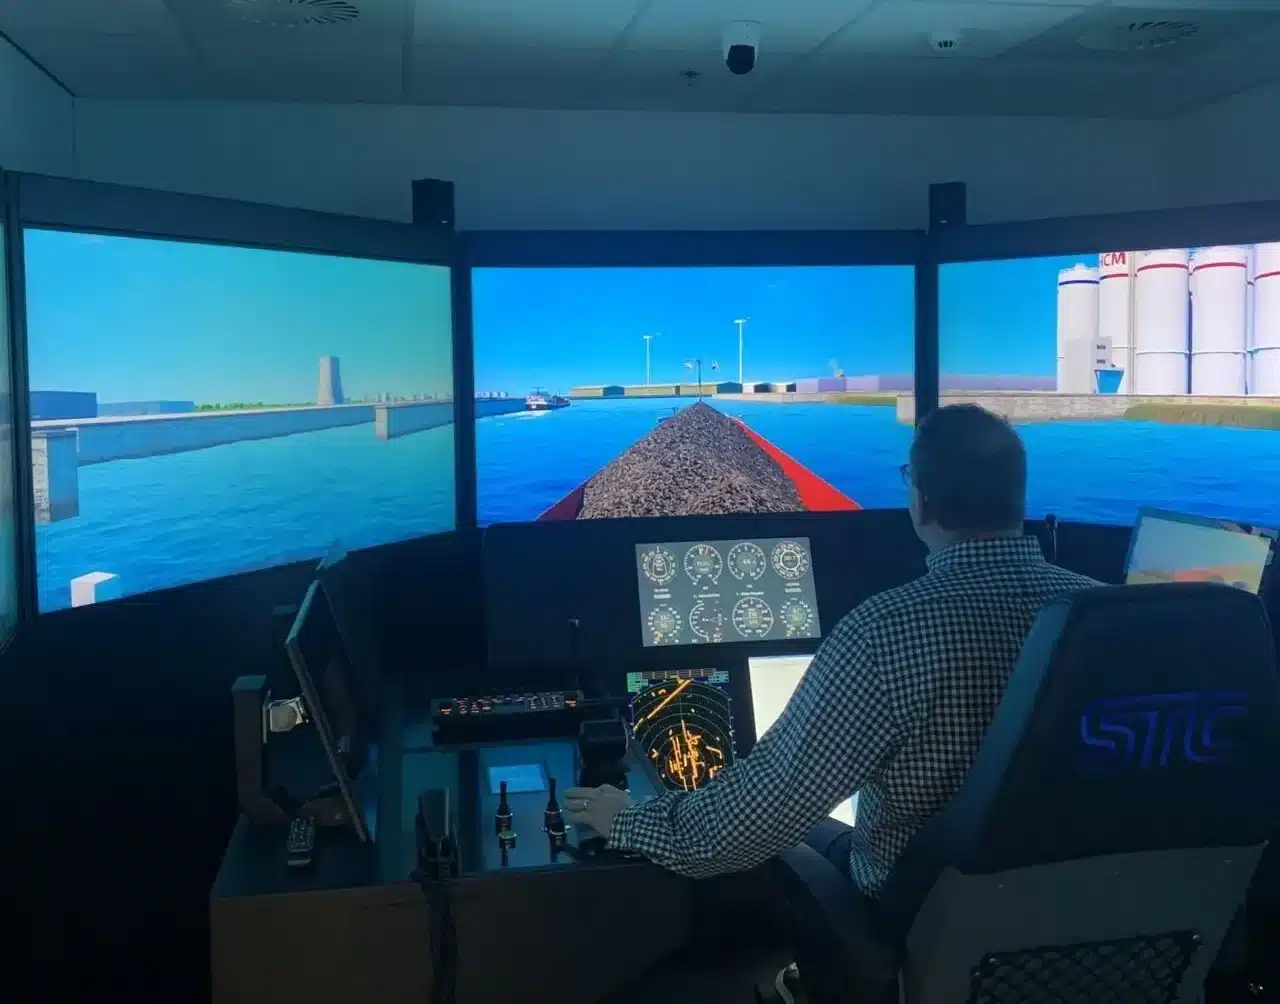 STC Next Simulatie voor opleiding Aspirant Schipper om het STC simulator - EU-kwalificatiecertificaat schipper te halen